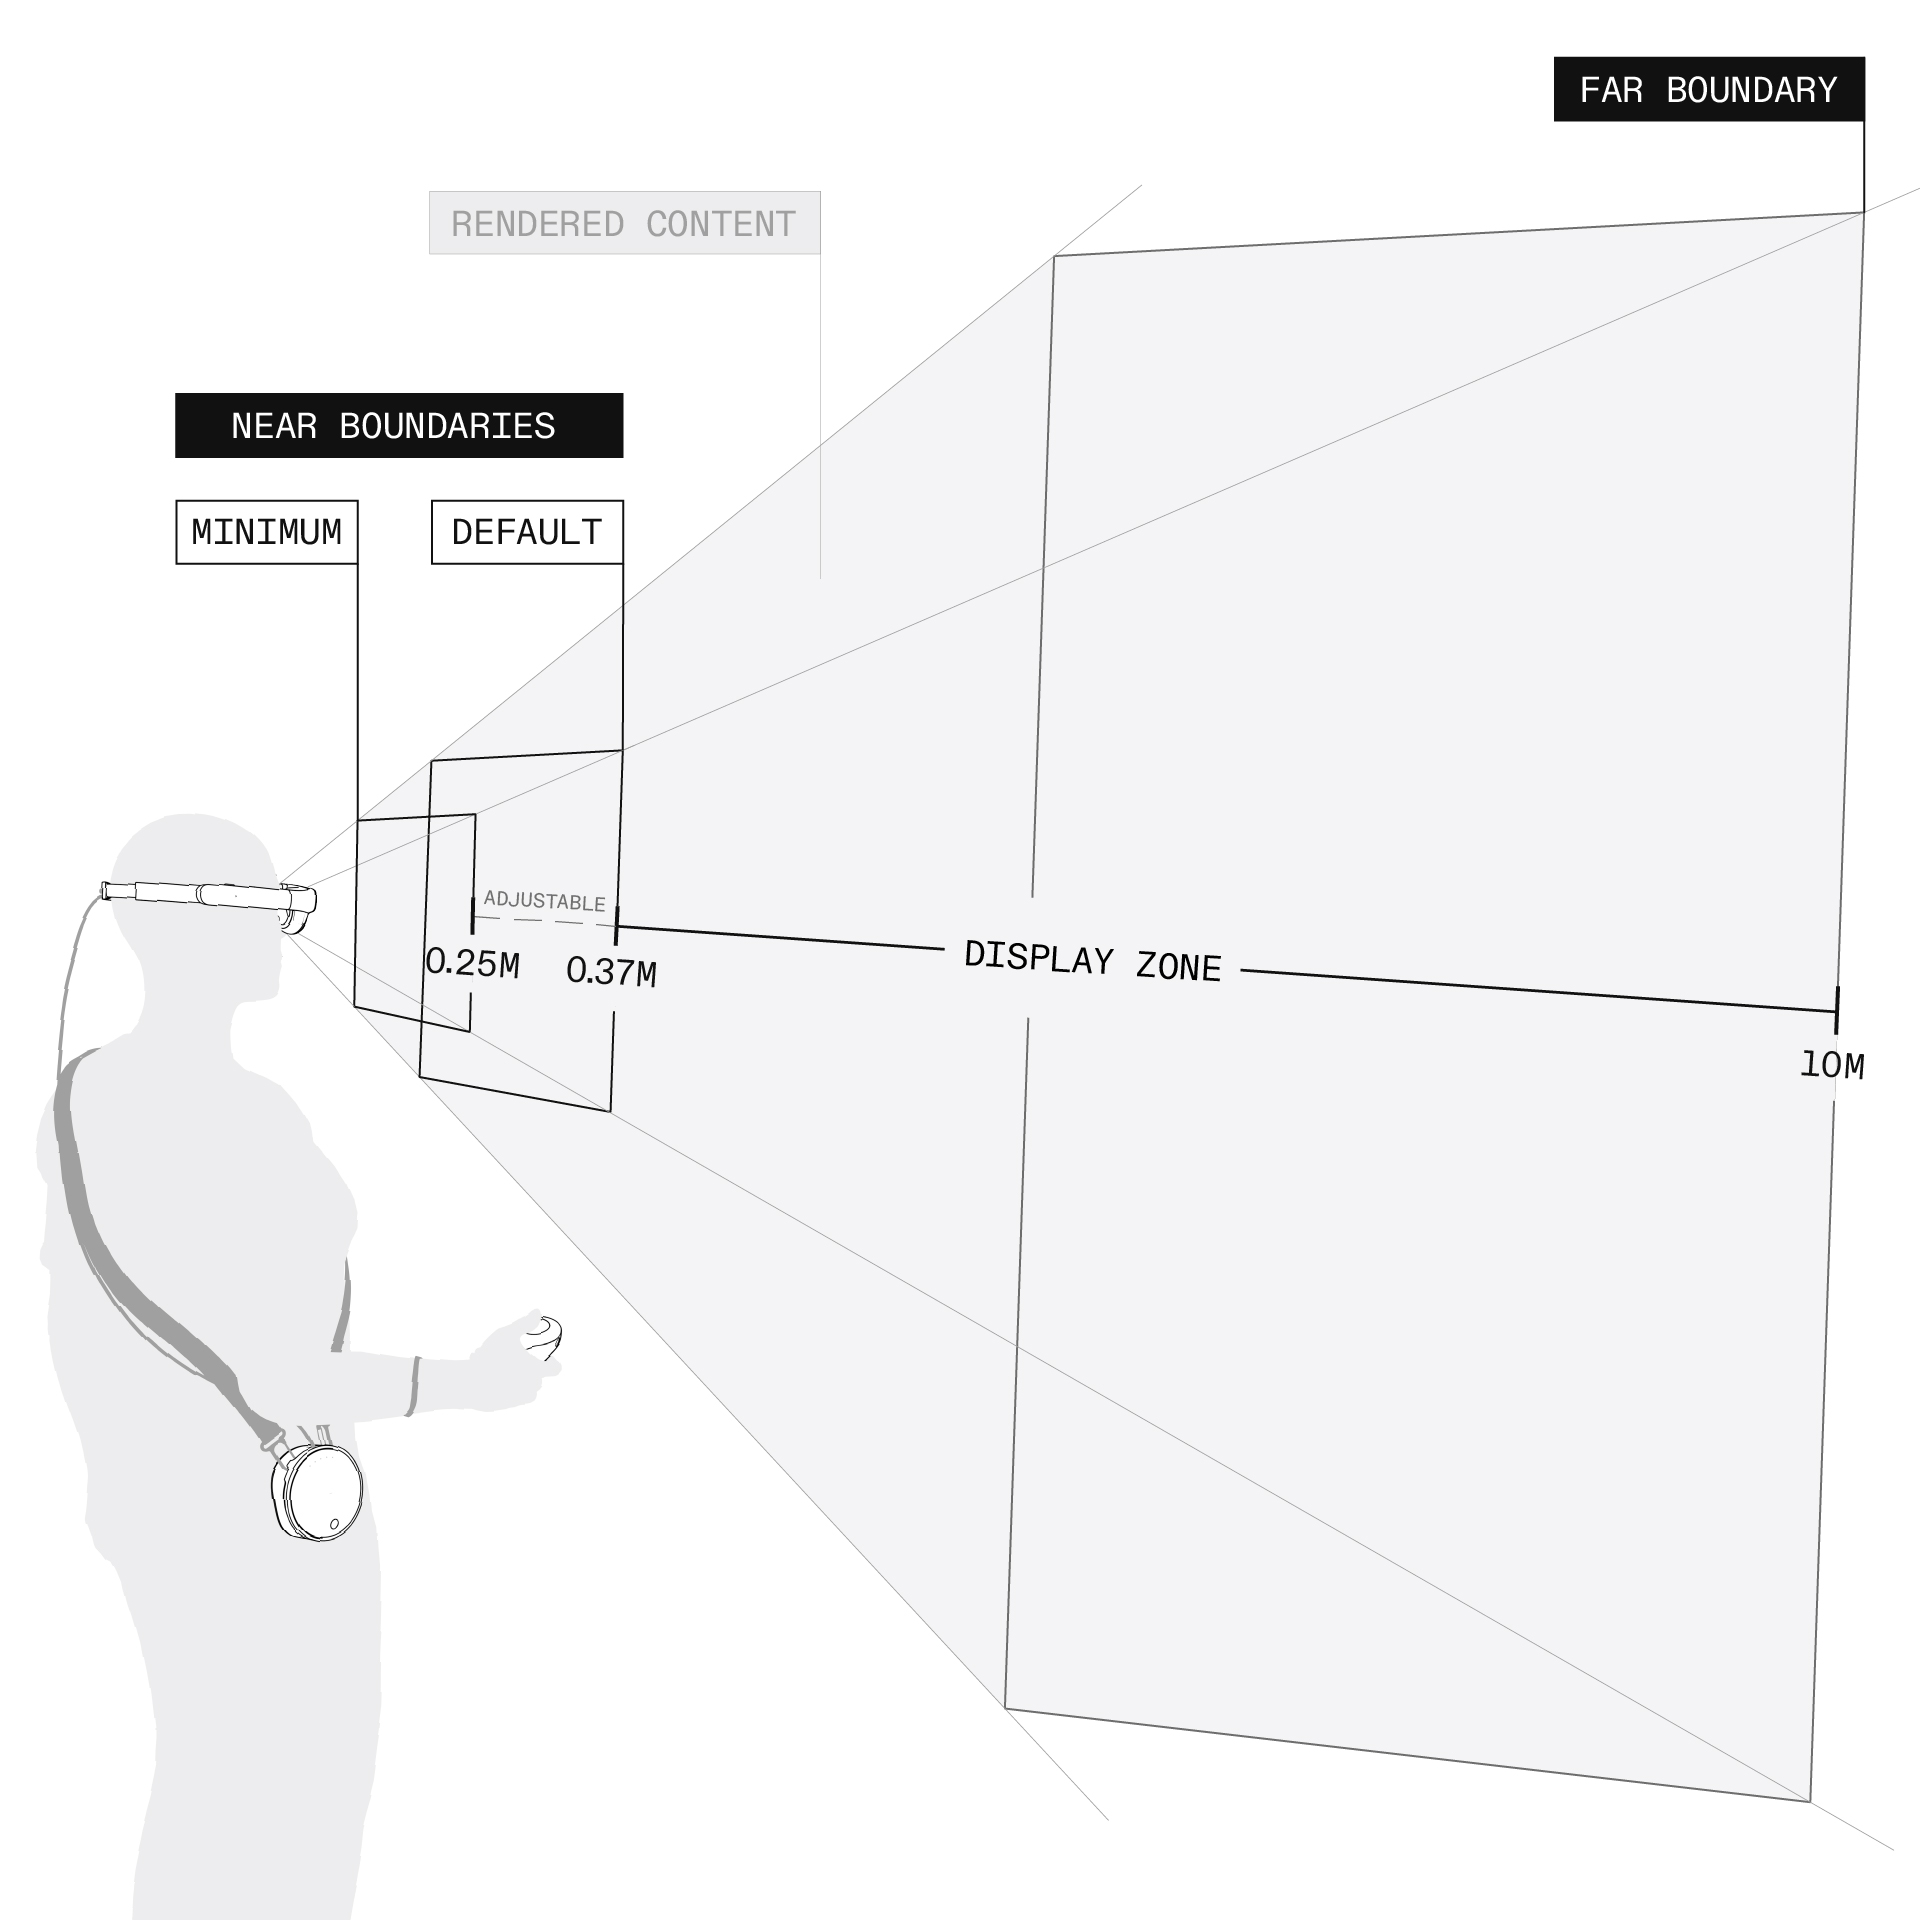 رسم تخطيطي منظوري من ثلاثة أرباع يُظهر شخصًا يرتدي سماعة ماجيك ليب ٢ مع الإشارة إلى منطقة العرض القريبة والحدود البعيدة.